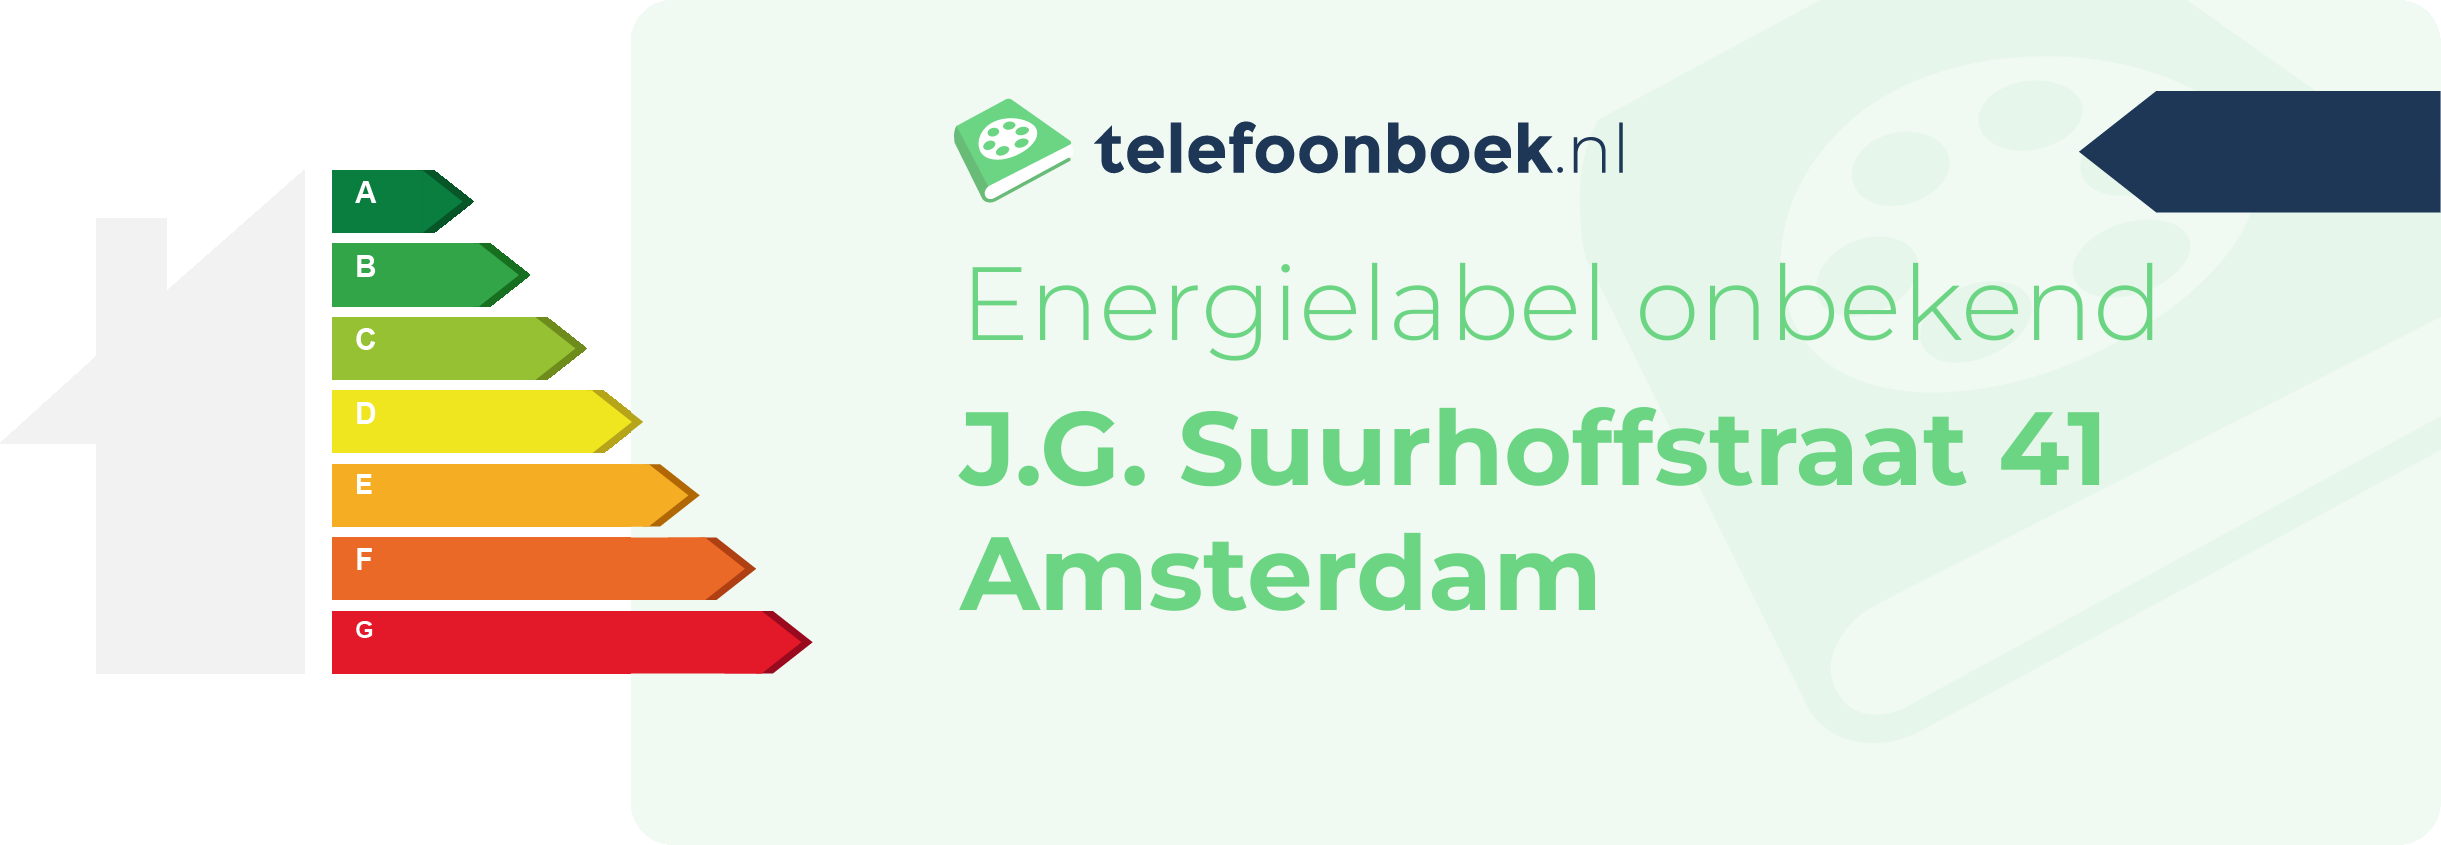 Energielabel J.G. Suurhoffstraat 41 Amsterdam